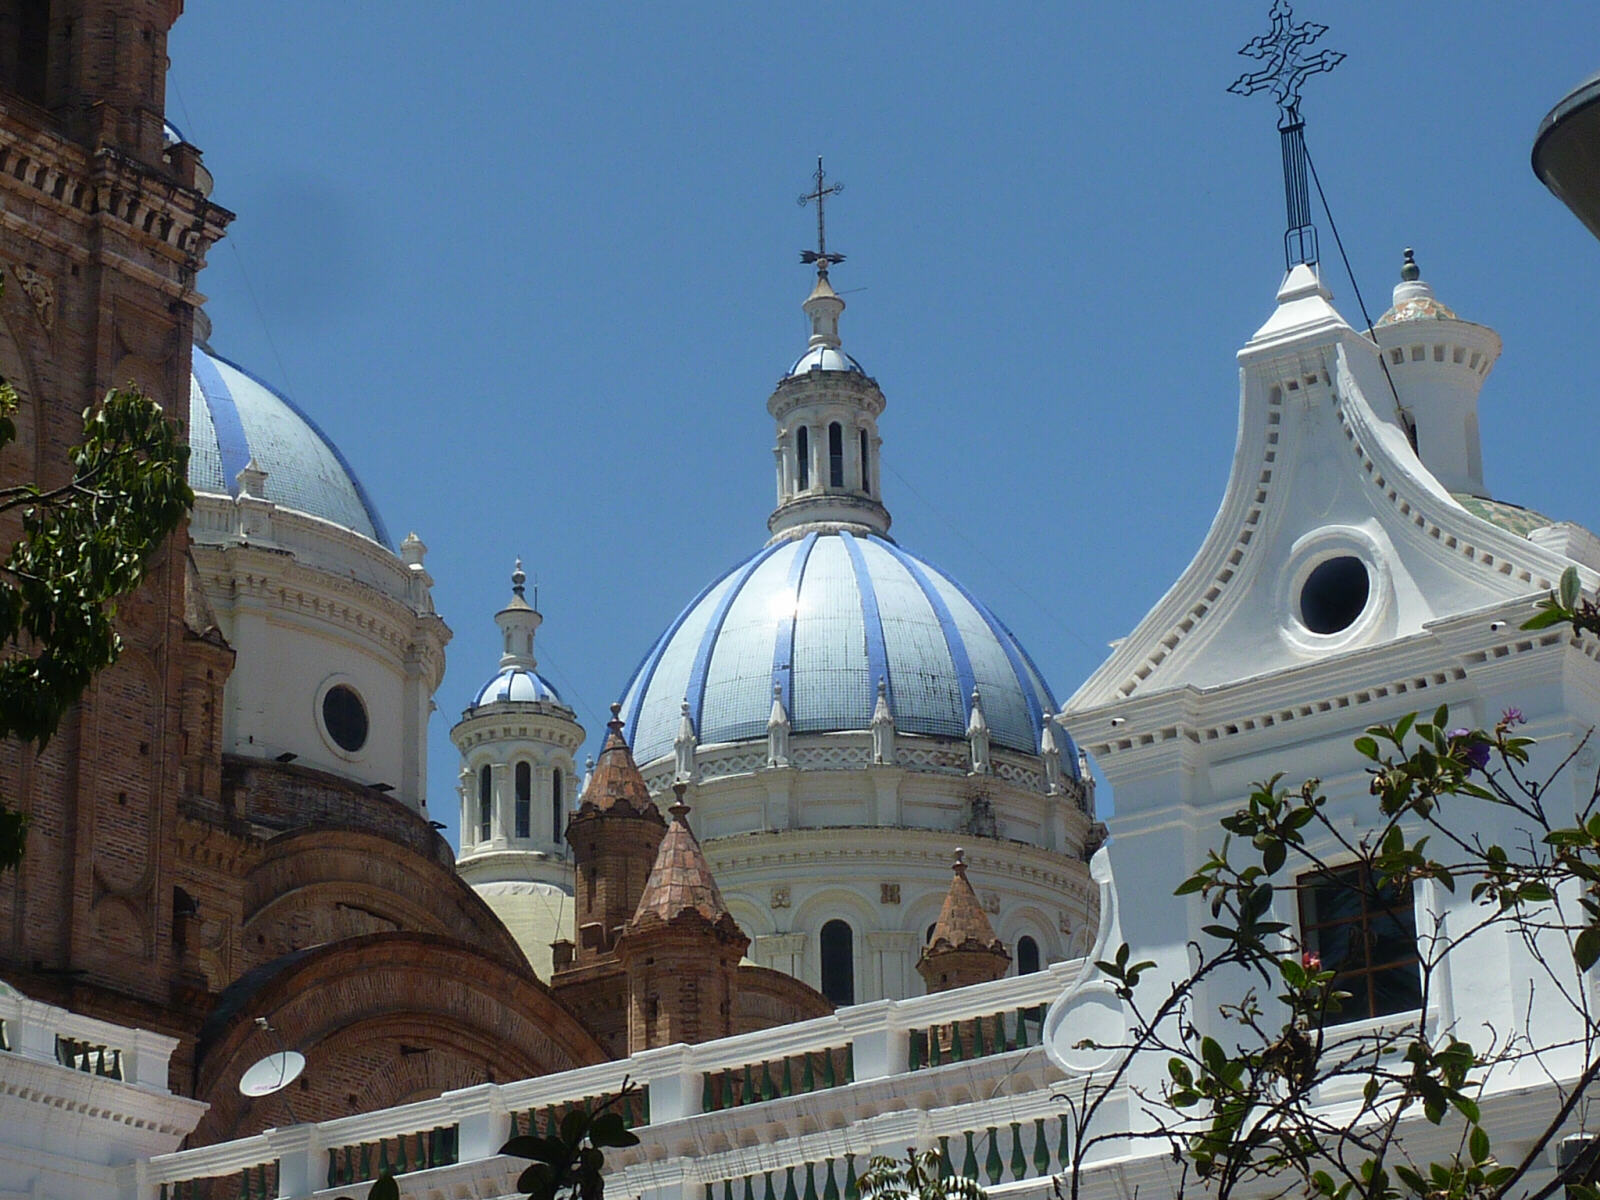 The cathedral in Cuenca, Ecuador